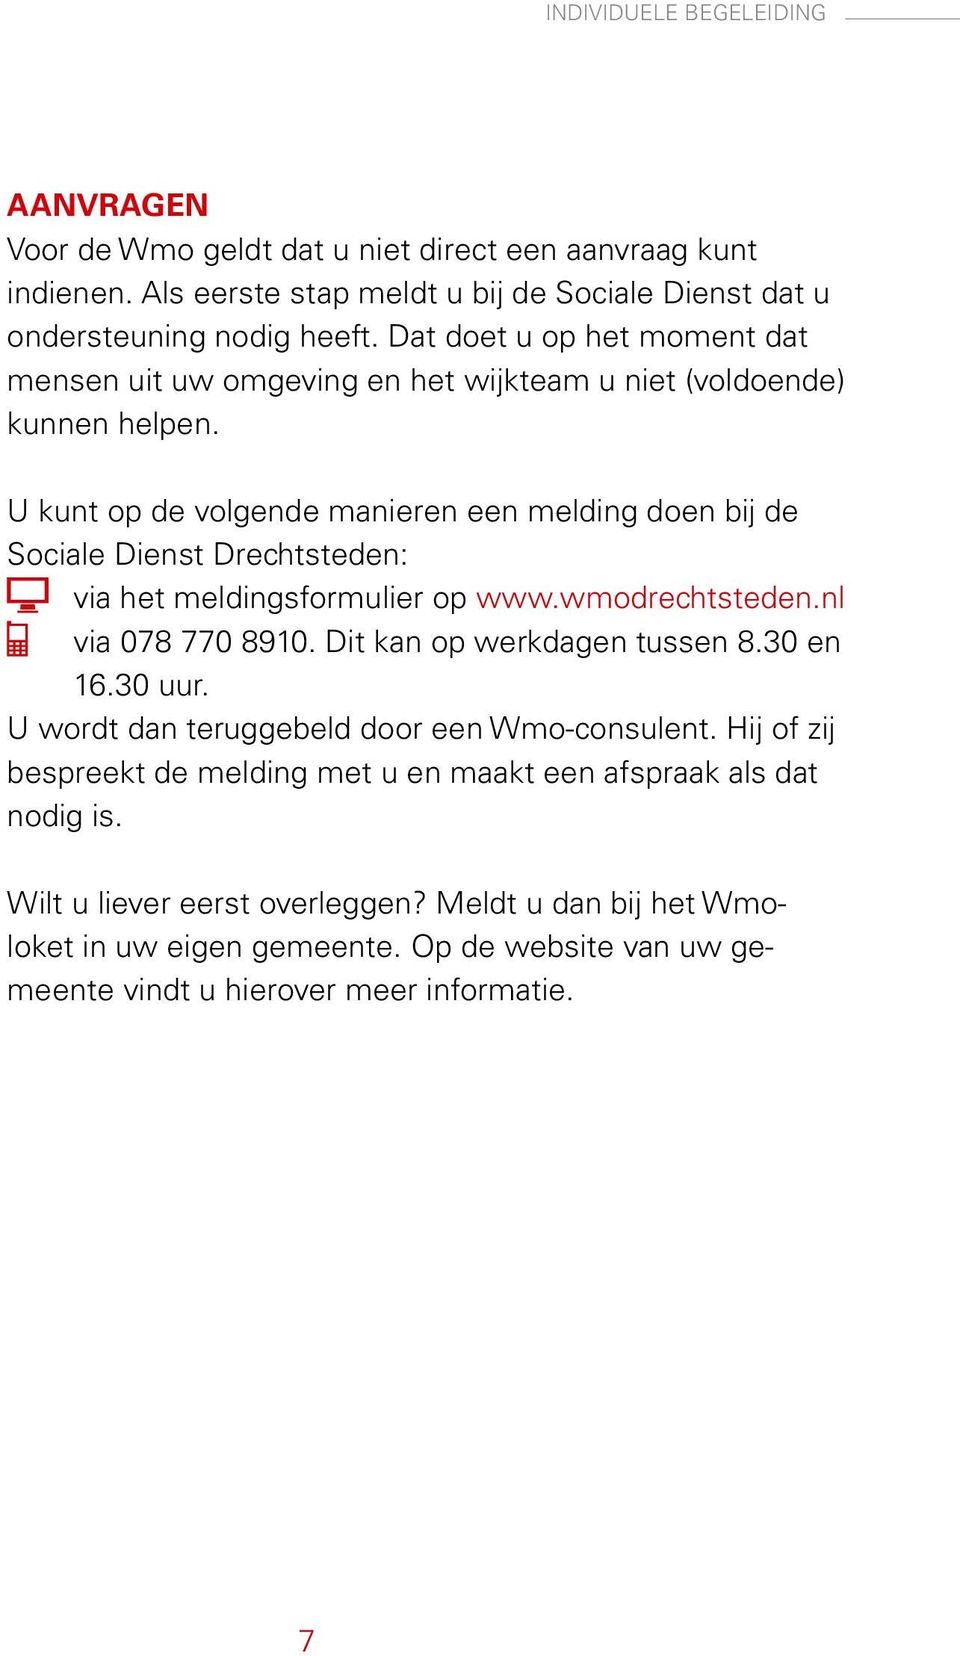 U kunt op de volgende manieren een melding doen bij de Sociale Dienst Drechtsteden: via het meldingsformulier op www.wmodrechtsteden.nl via 078 770 8910. Dit kan op werkdagen tussen 8.